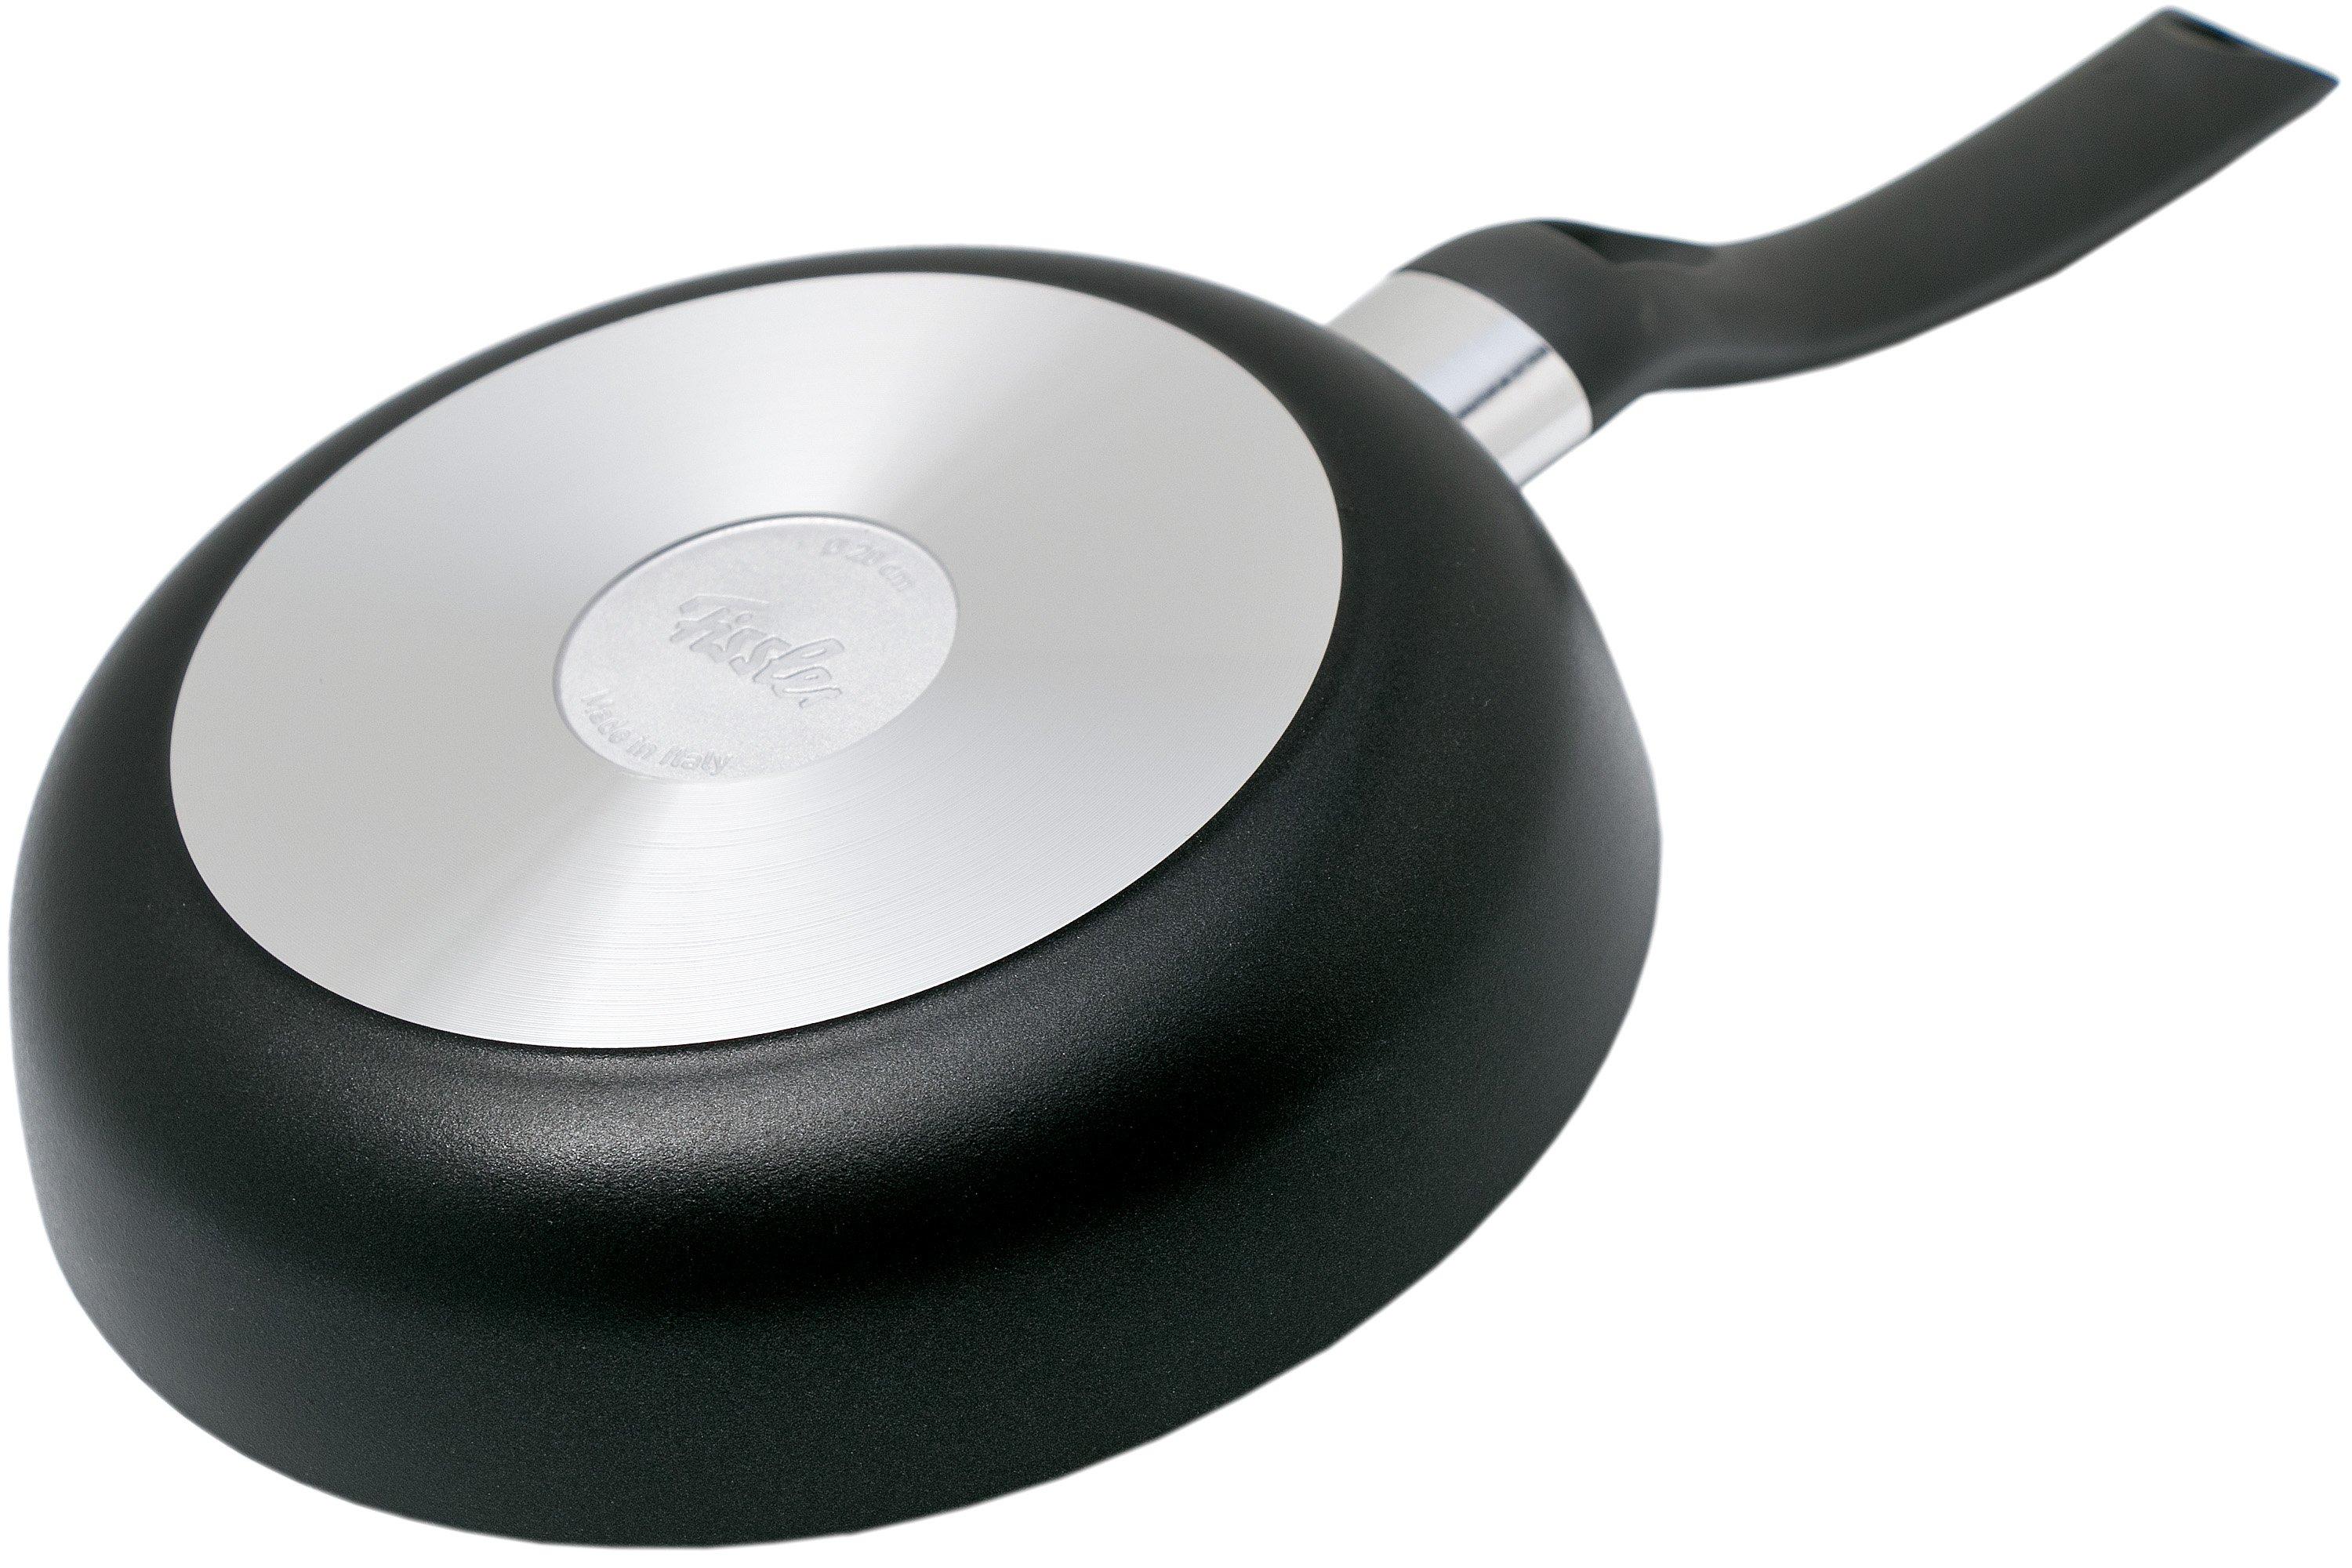 Sartén wok de aluminio con 3 capas antiadherentes Cenit Fissler